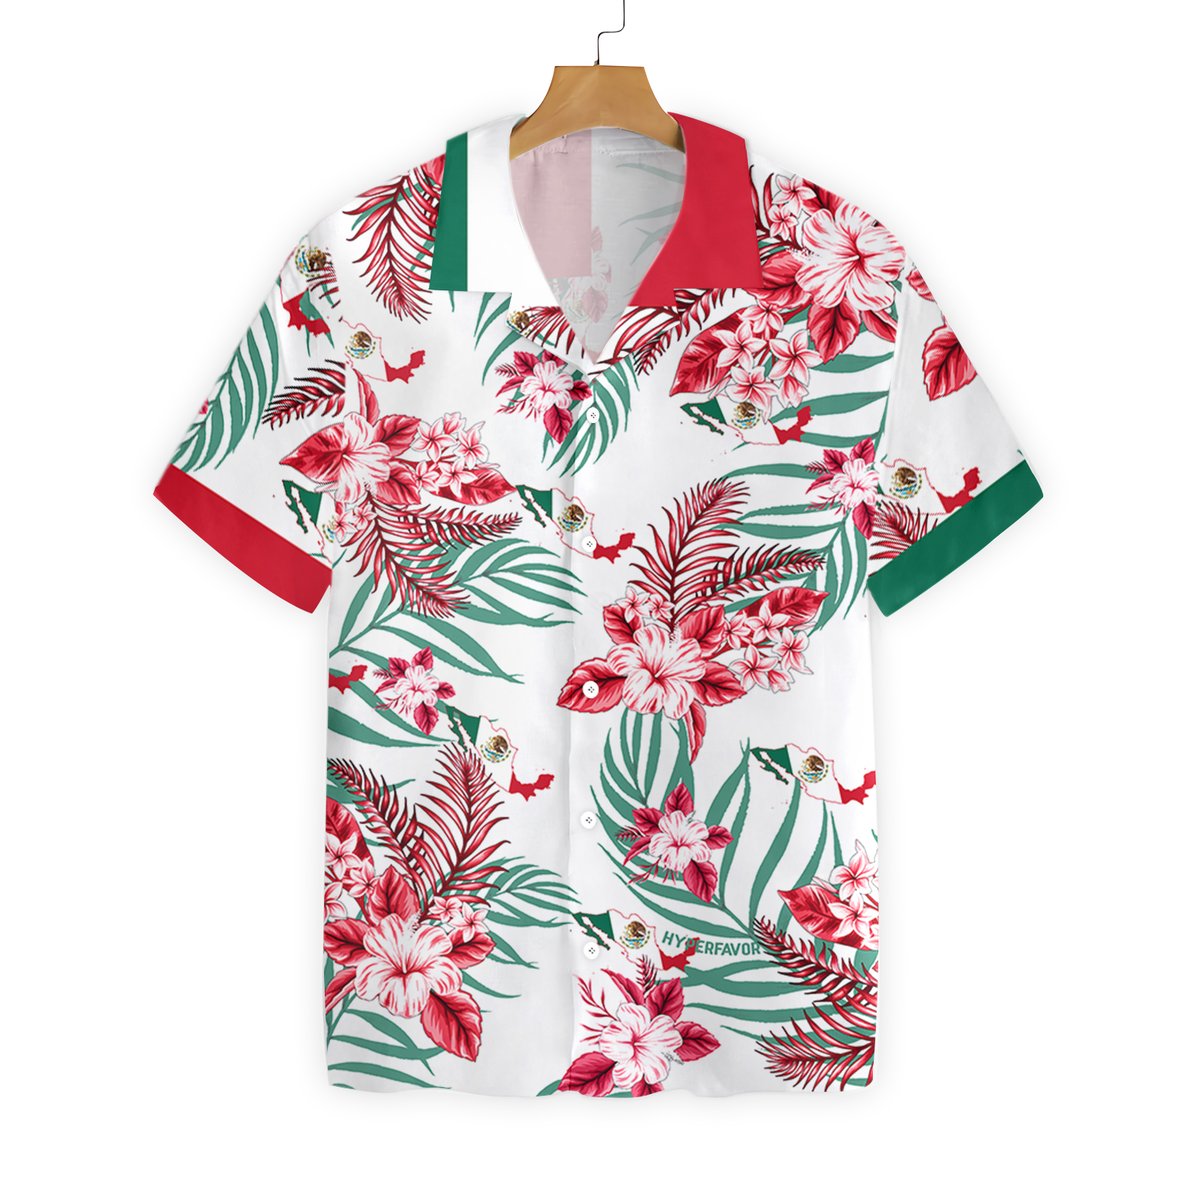 Mexico proud hawaiian shirt Front